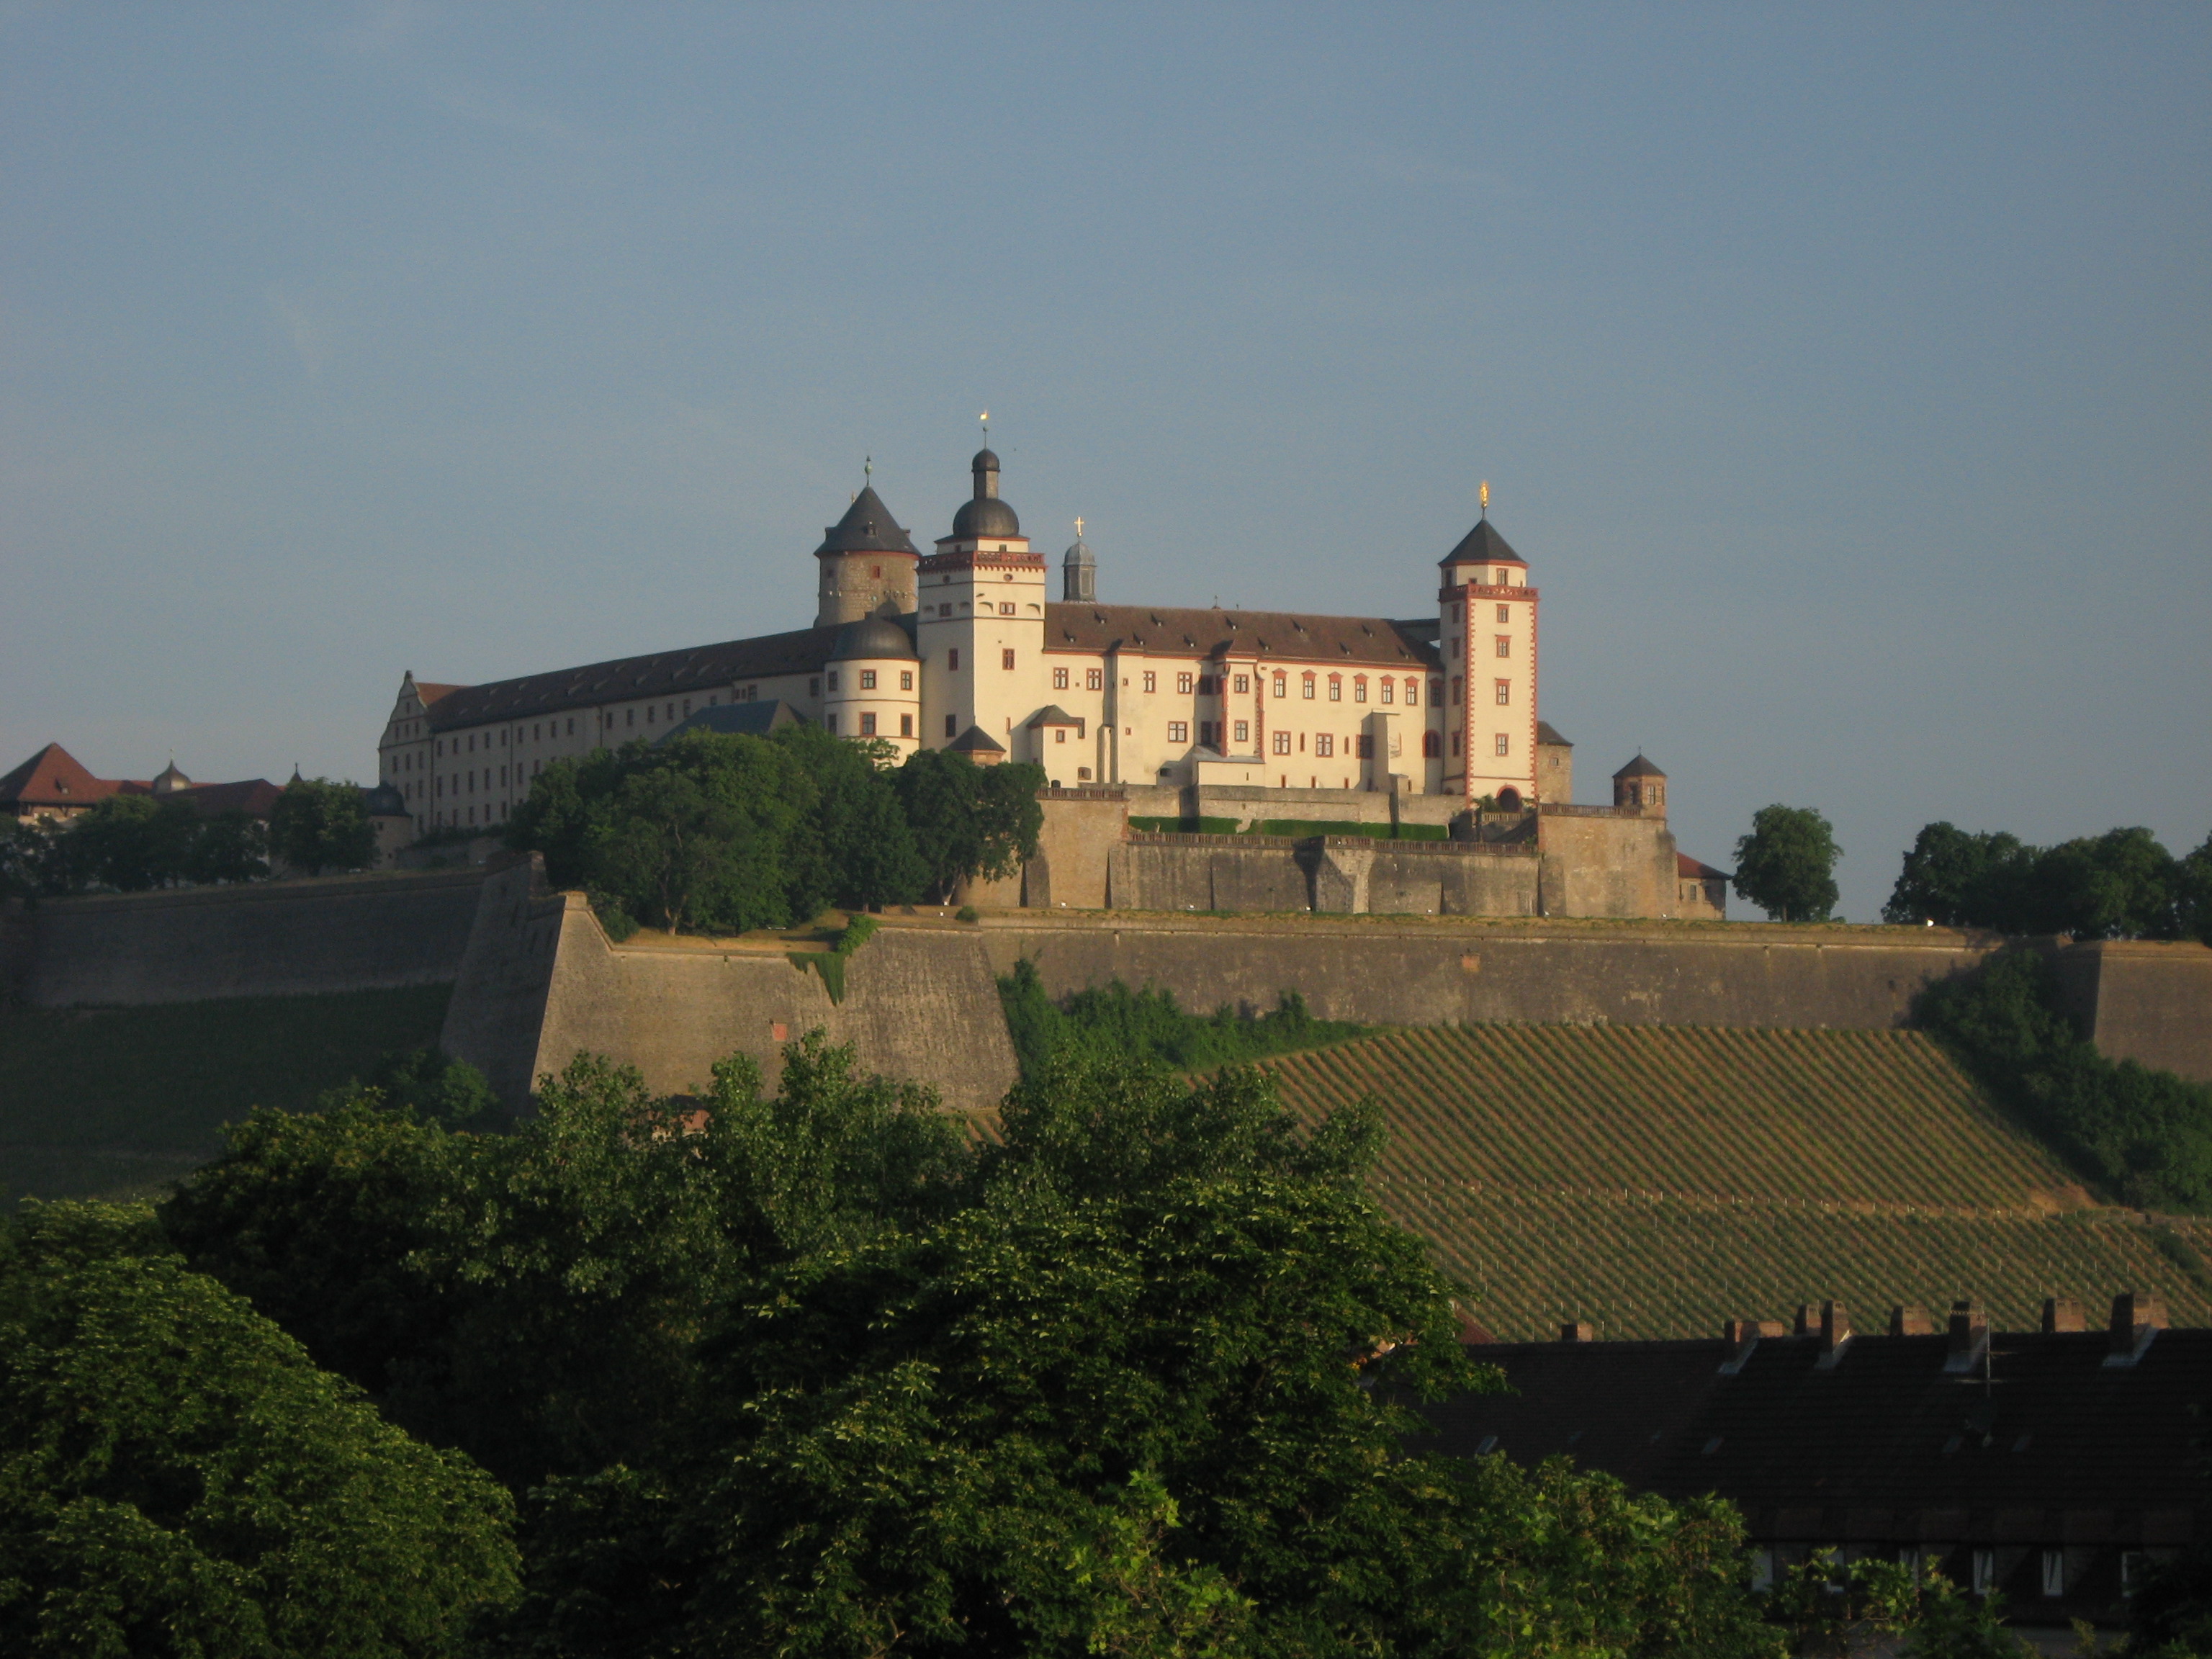 Marienberg Fortress #9